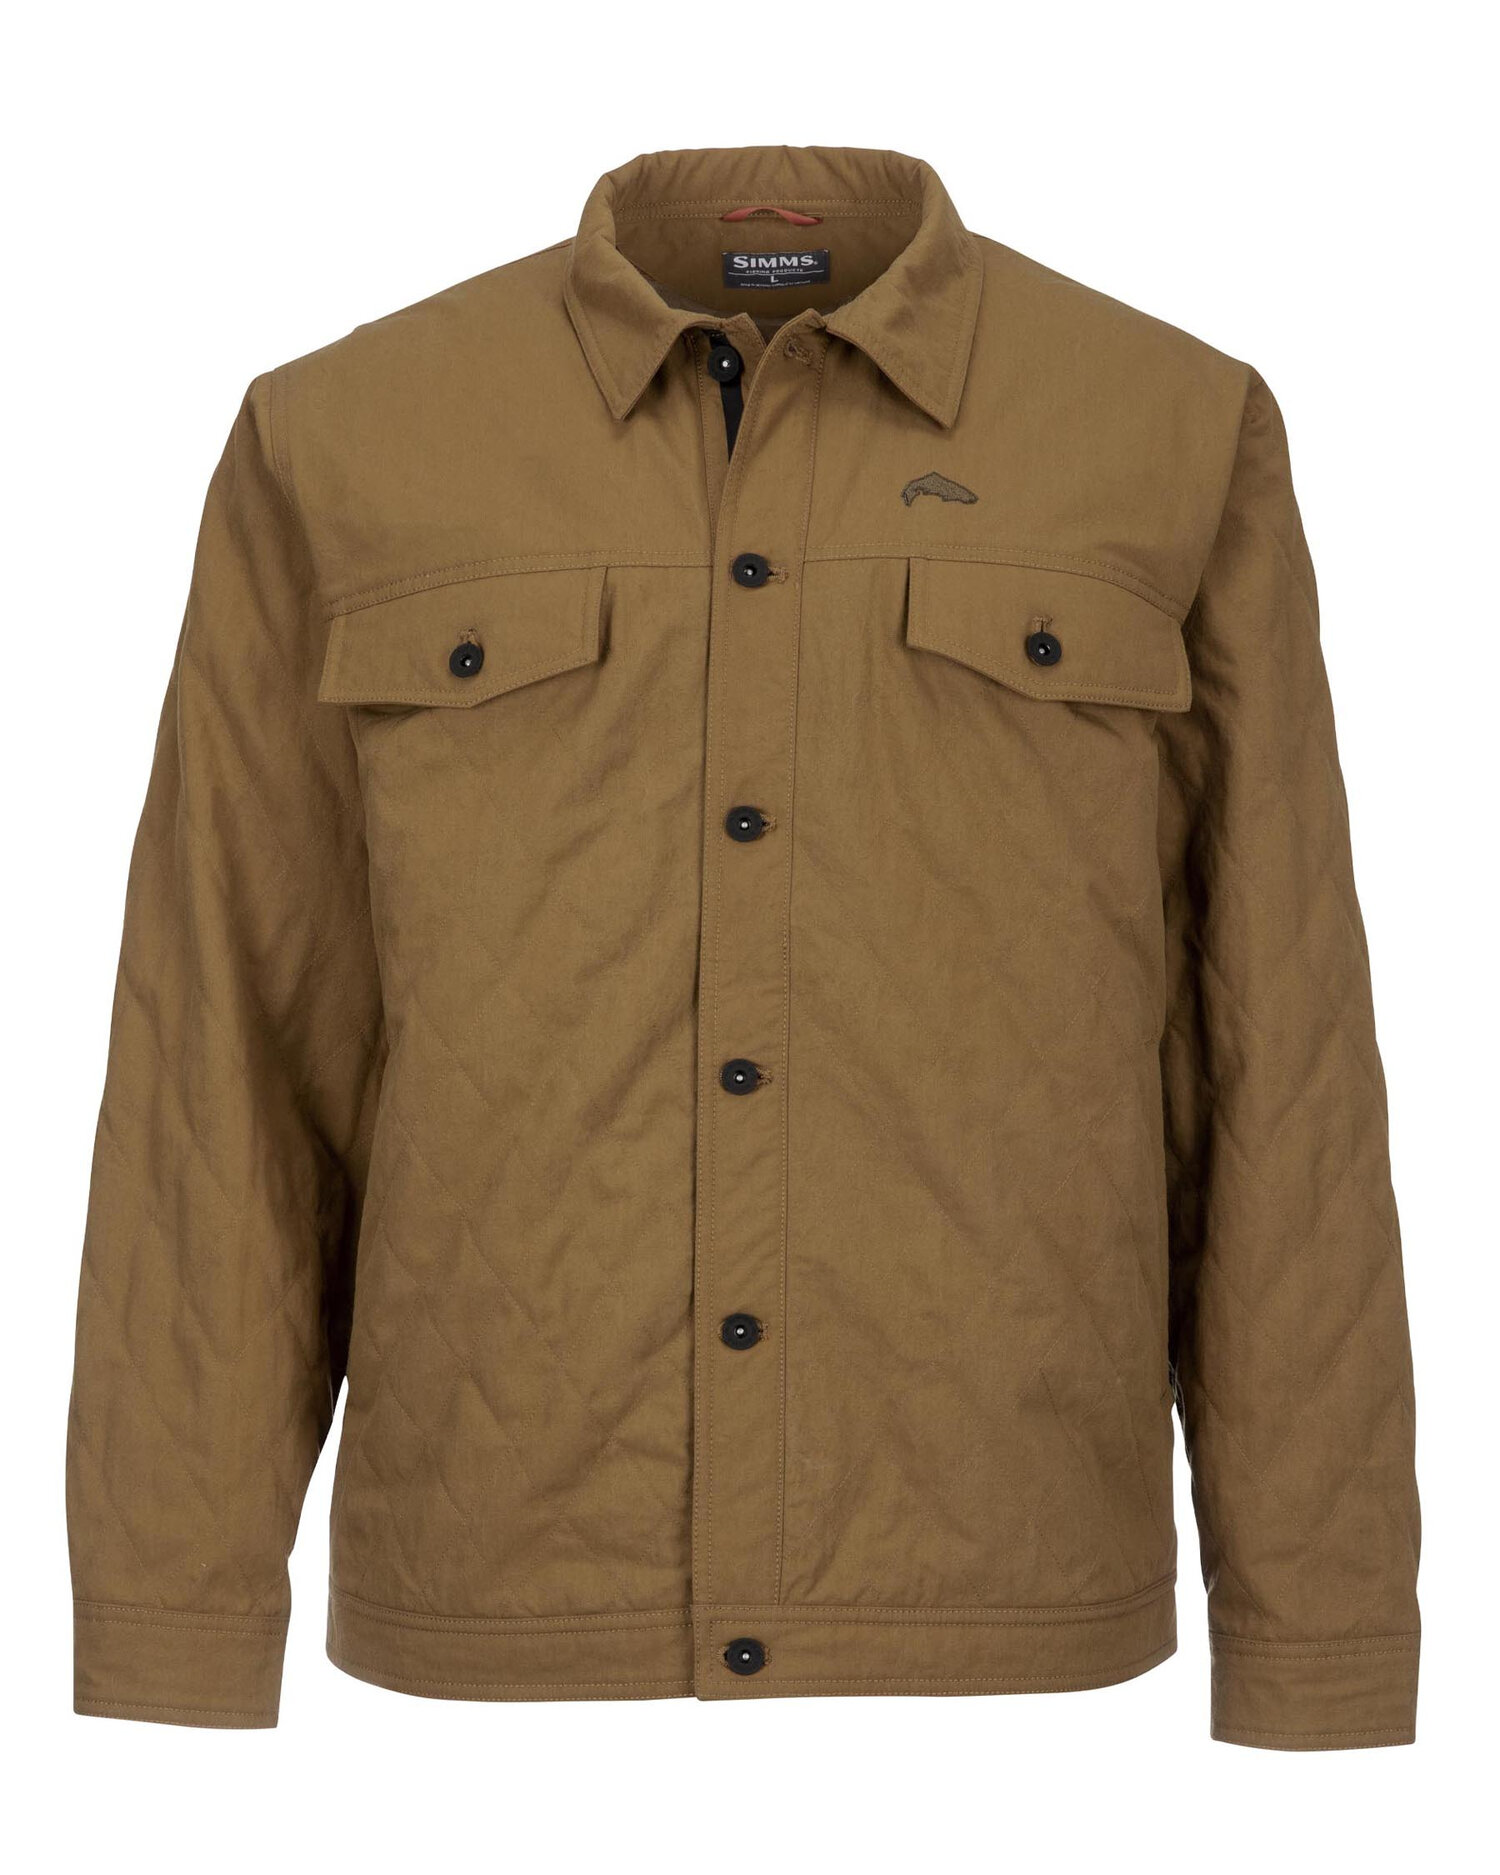 M’s Simms Dockwear Jacket — The Flannel Fox